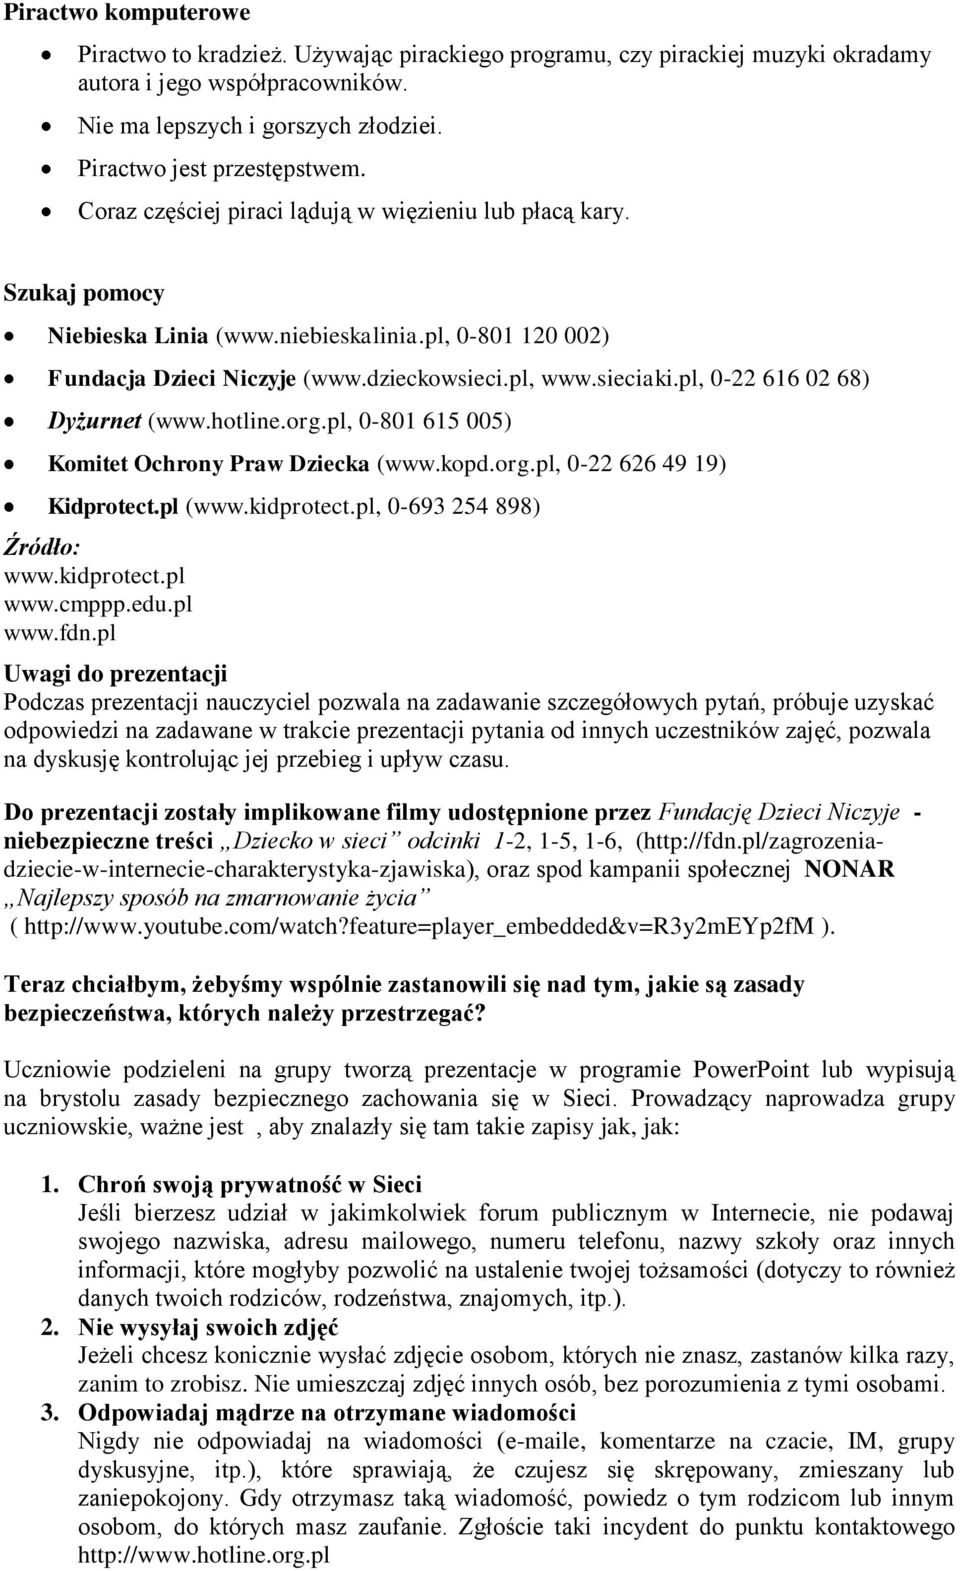 pl, 0-22 616 02 68) Dyżurnet (www.hotline.org.pl, 0-801 615 005) Komitet Ochrony Praw Dziecka (www.kopd.org.pl, 0-22 626 49 19) Kidprotect.pl (www.kidprotect.pl, 0-693 254 898) Źródło: www.kidprotect.pl www.